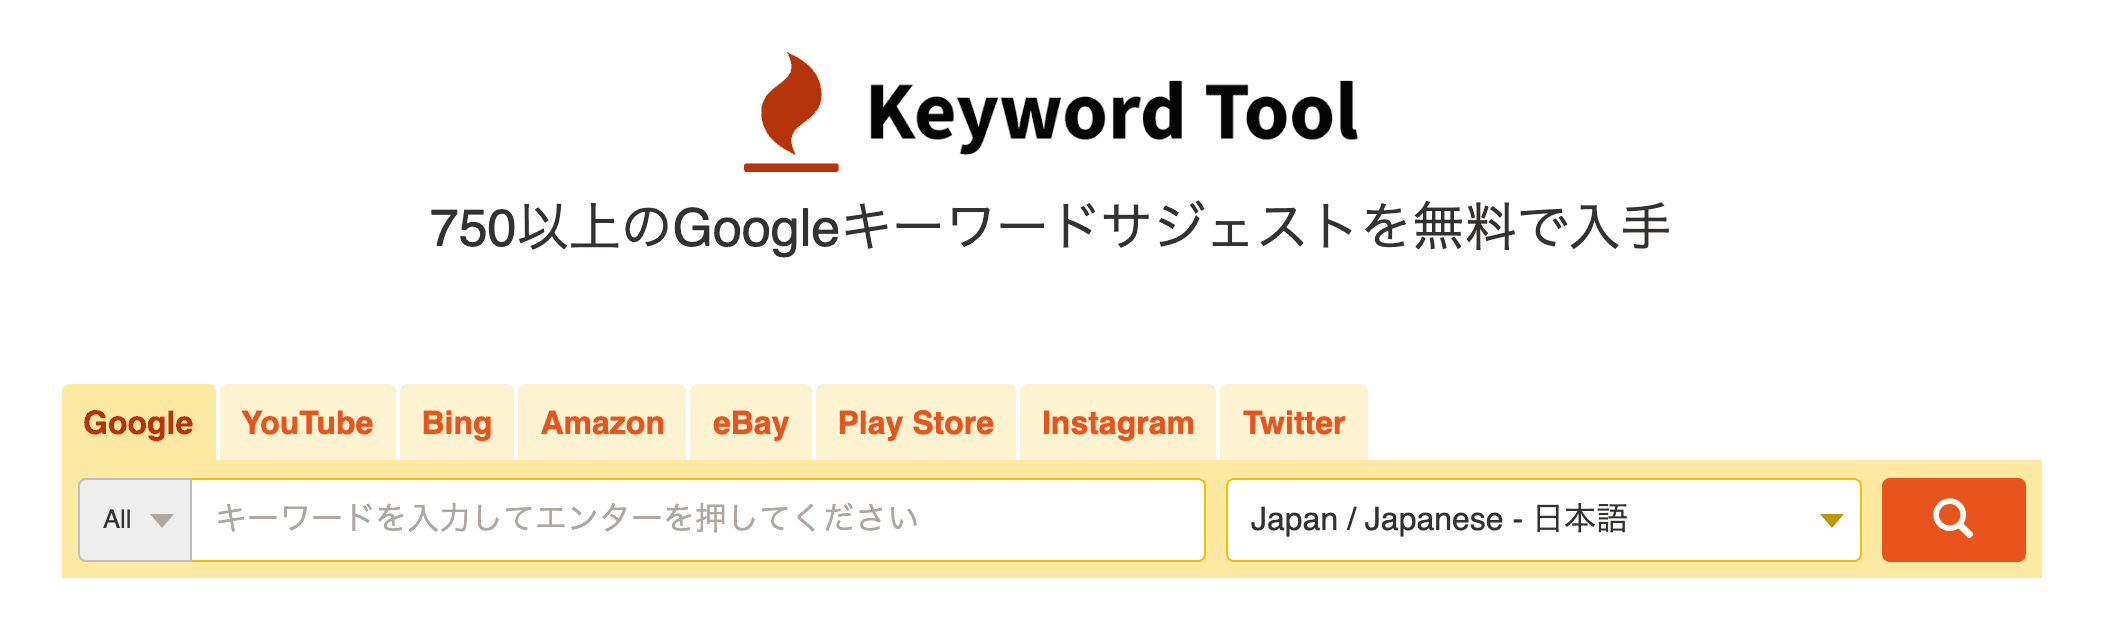 key word tool ioの検索画面を解説